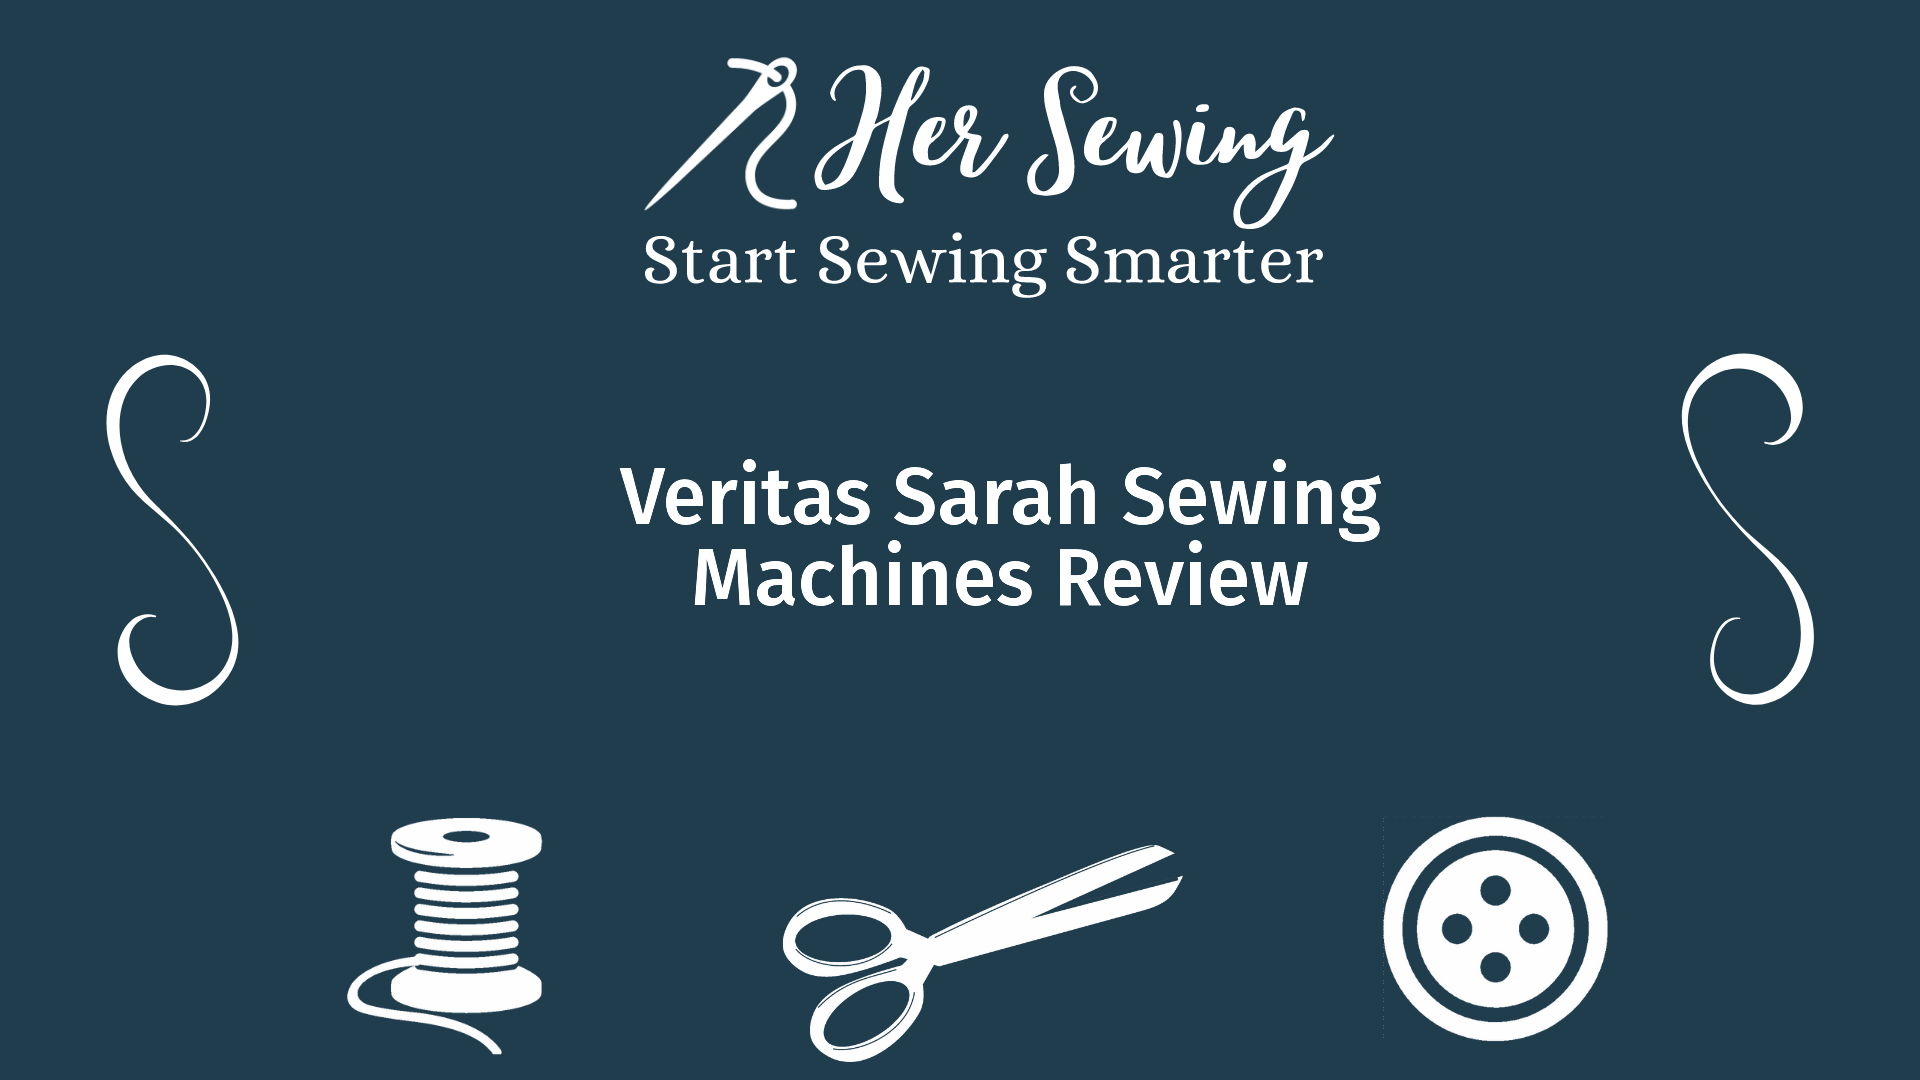 Veritas Sarah Sewing Machines Review